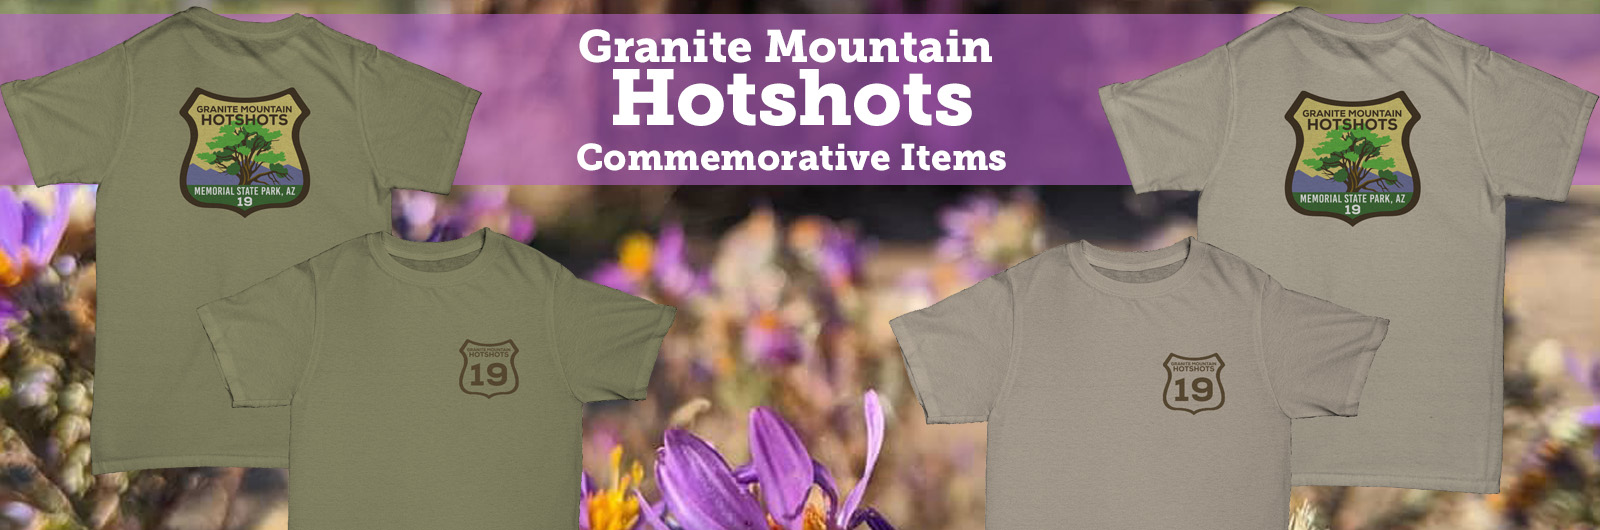 Commemorative Hotshots Merchandise